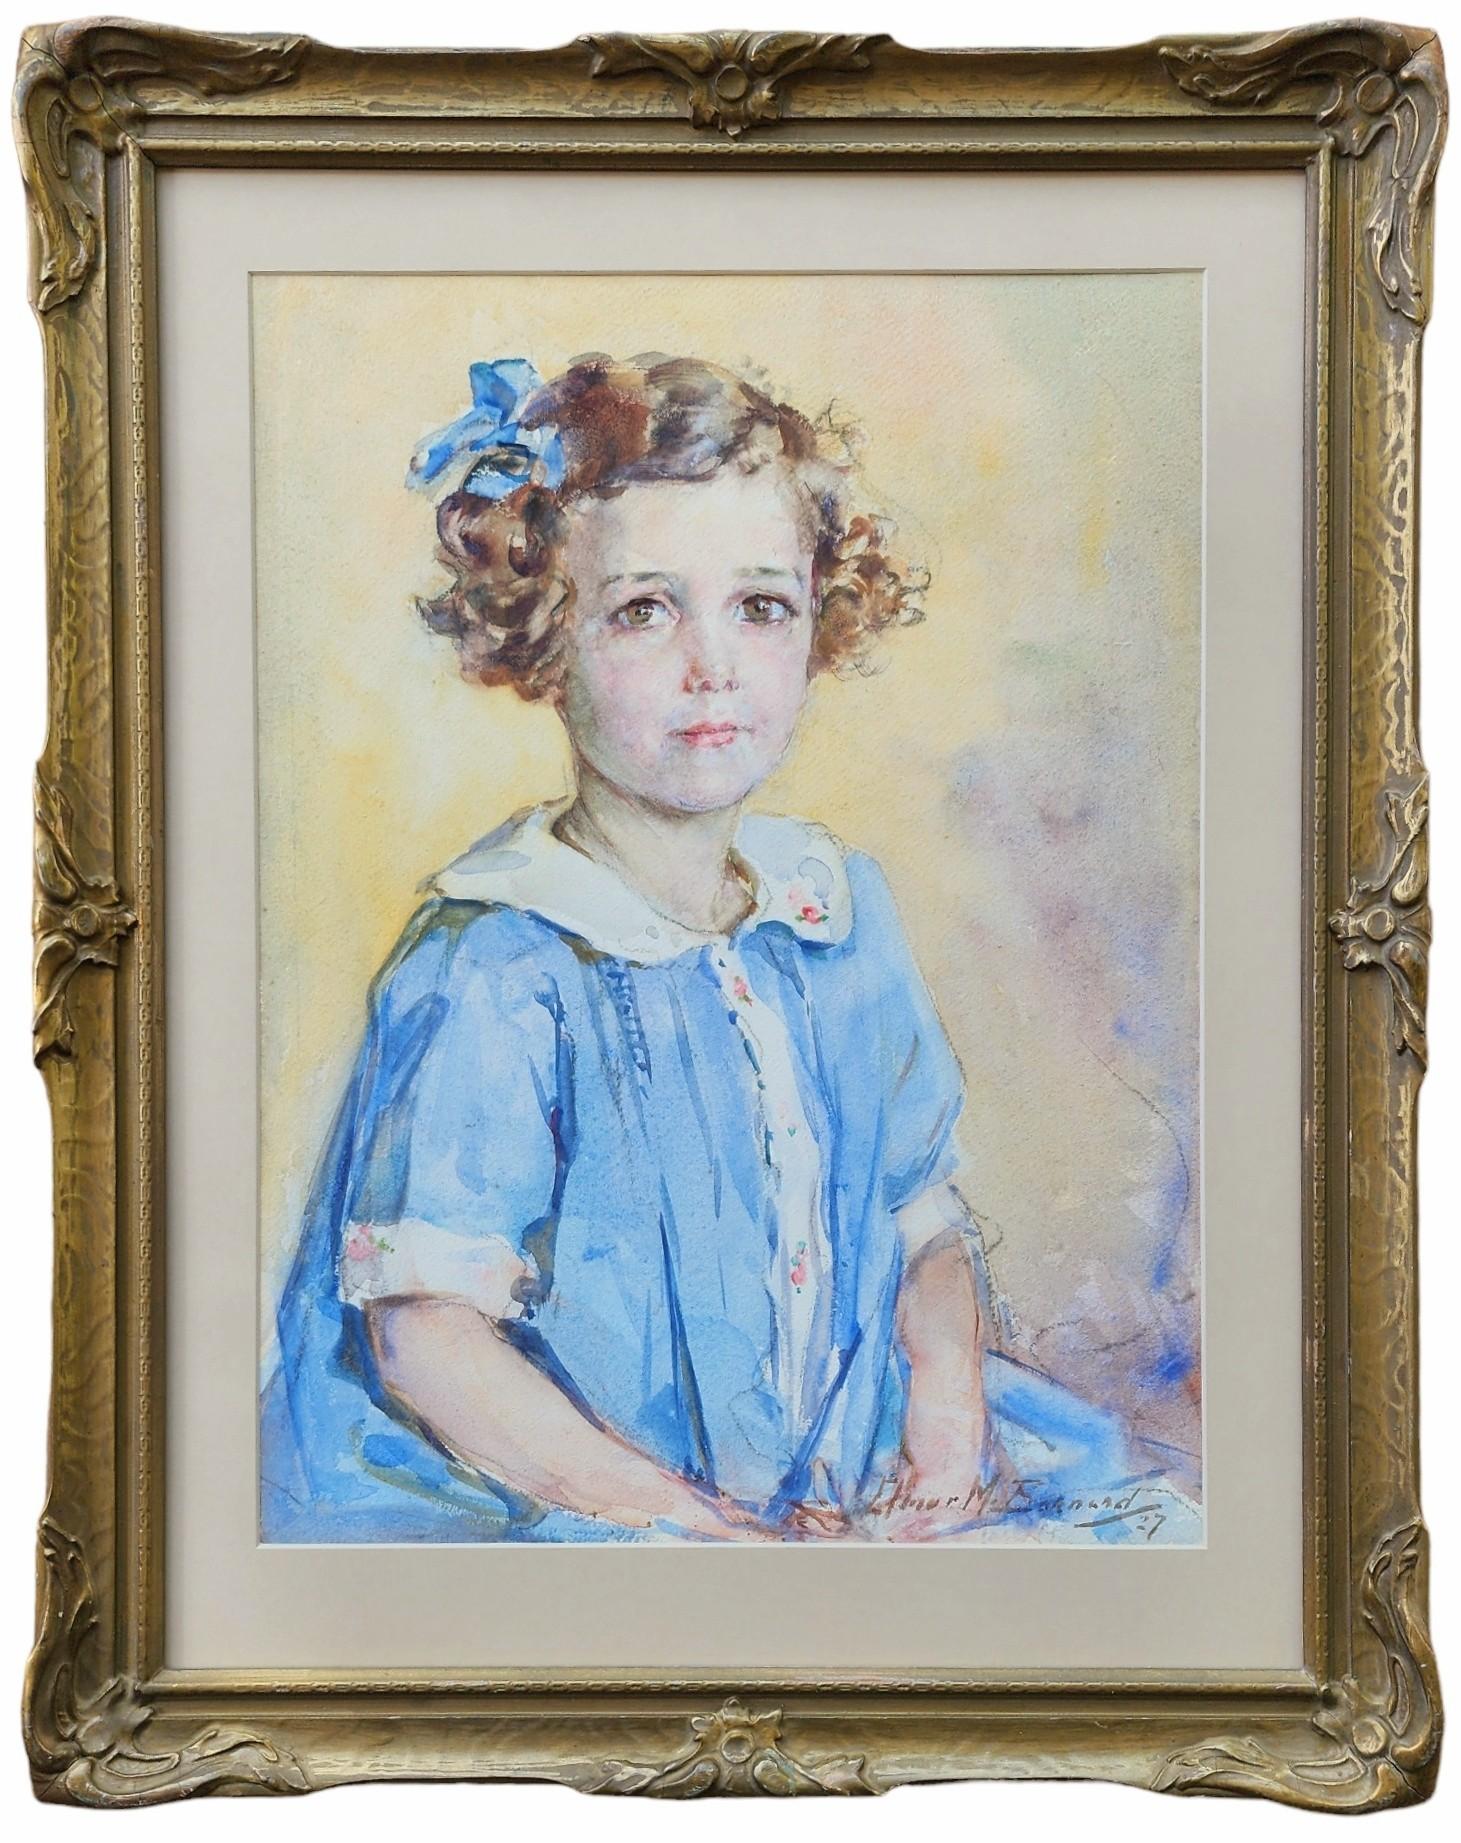 Portrait of Lois B. Murphy, Little Girl, Blue Dress, 1920s Portrait - Art by Elinor M. Barnard